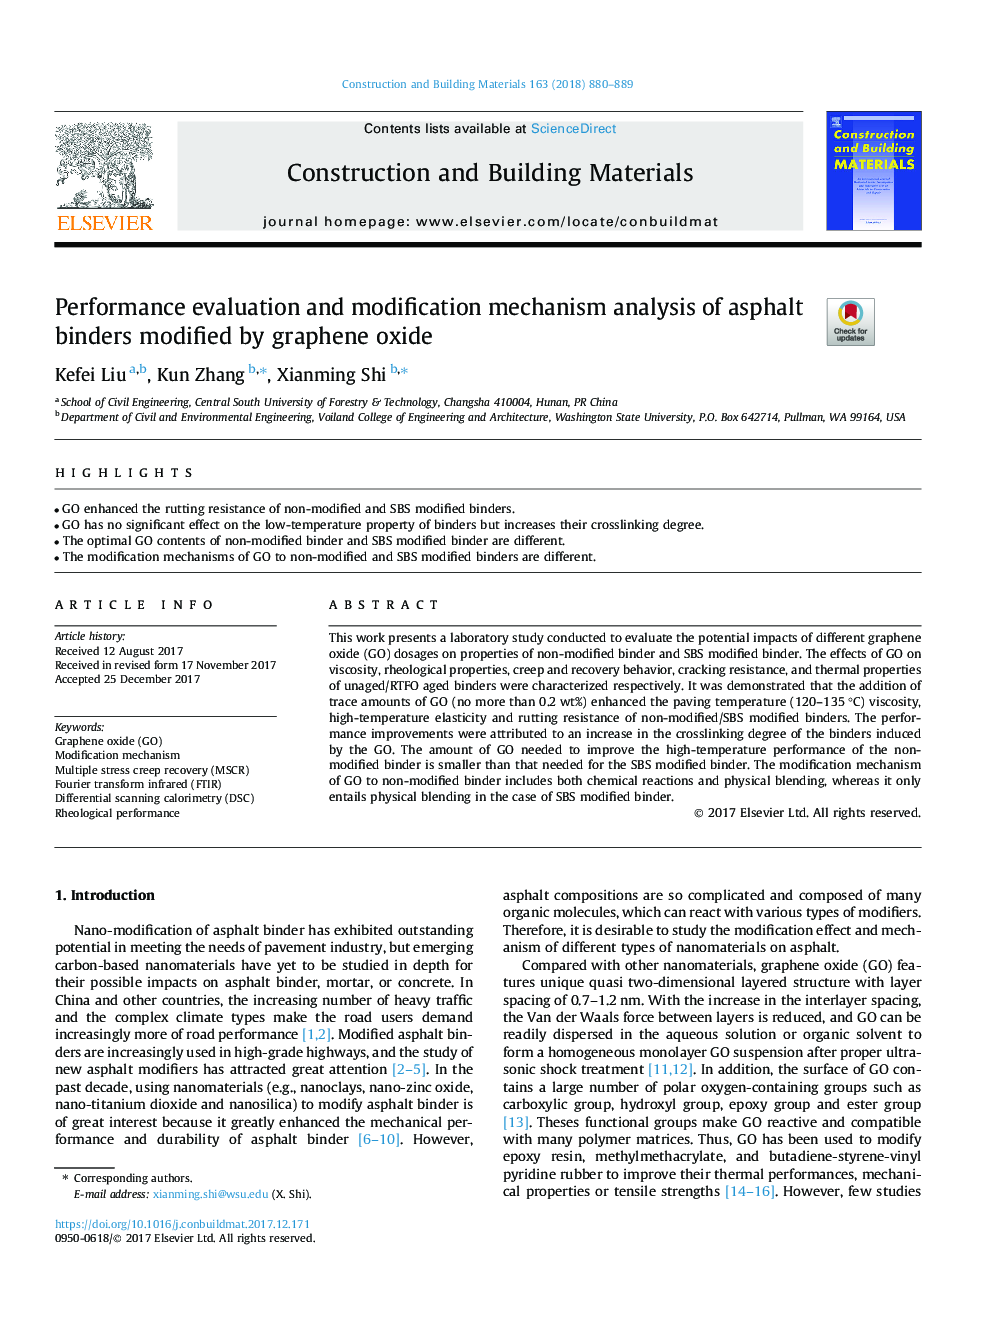 ارزیابی عملکرد و تجزیه و تحلیل مکانیزم اصلاح باند آسفالت اصلاح شده توسط اکسید گرافین 